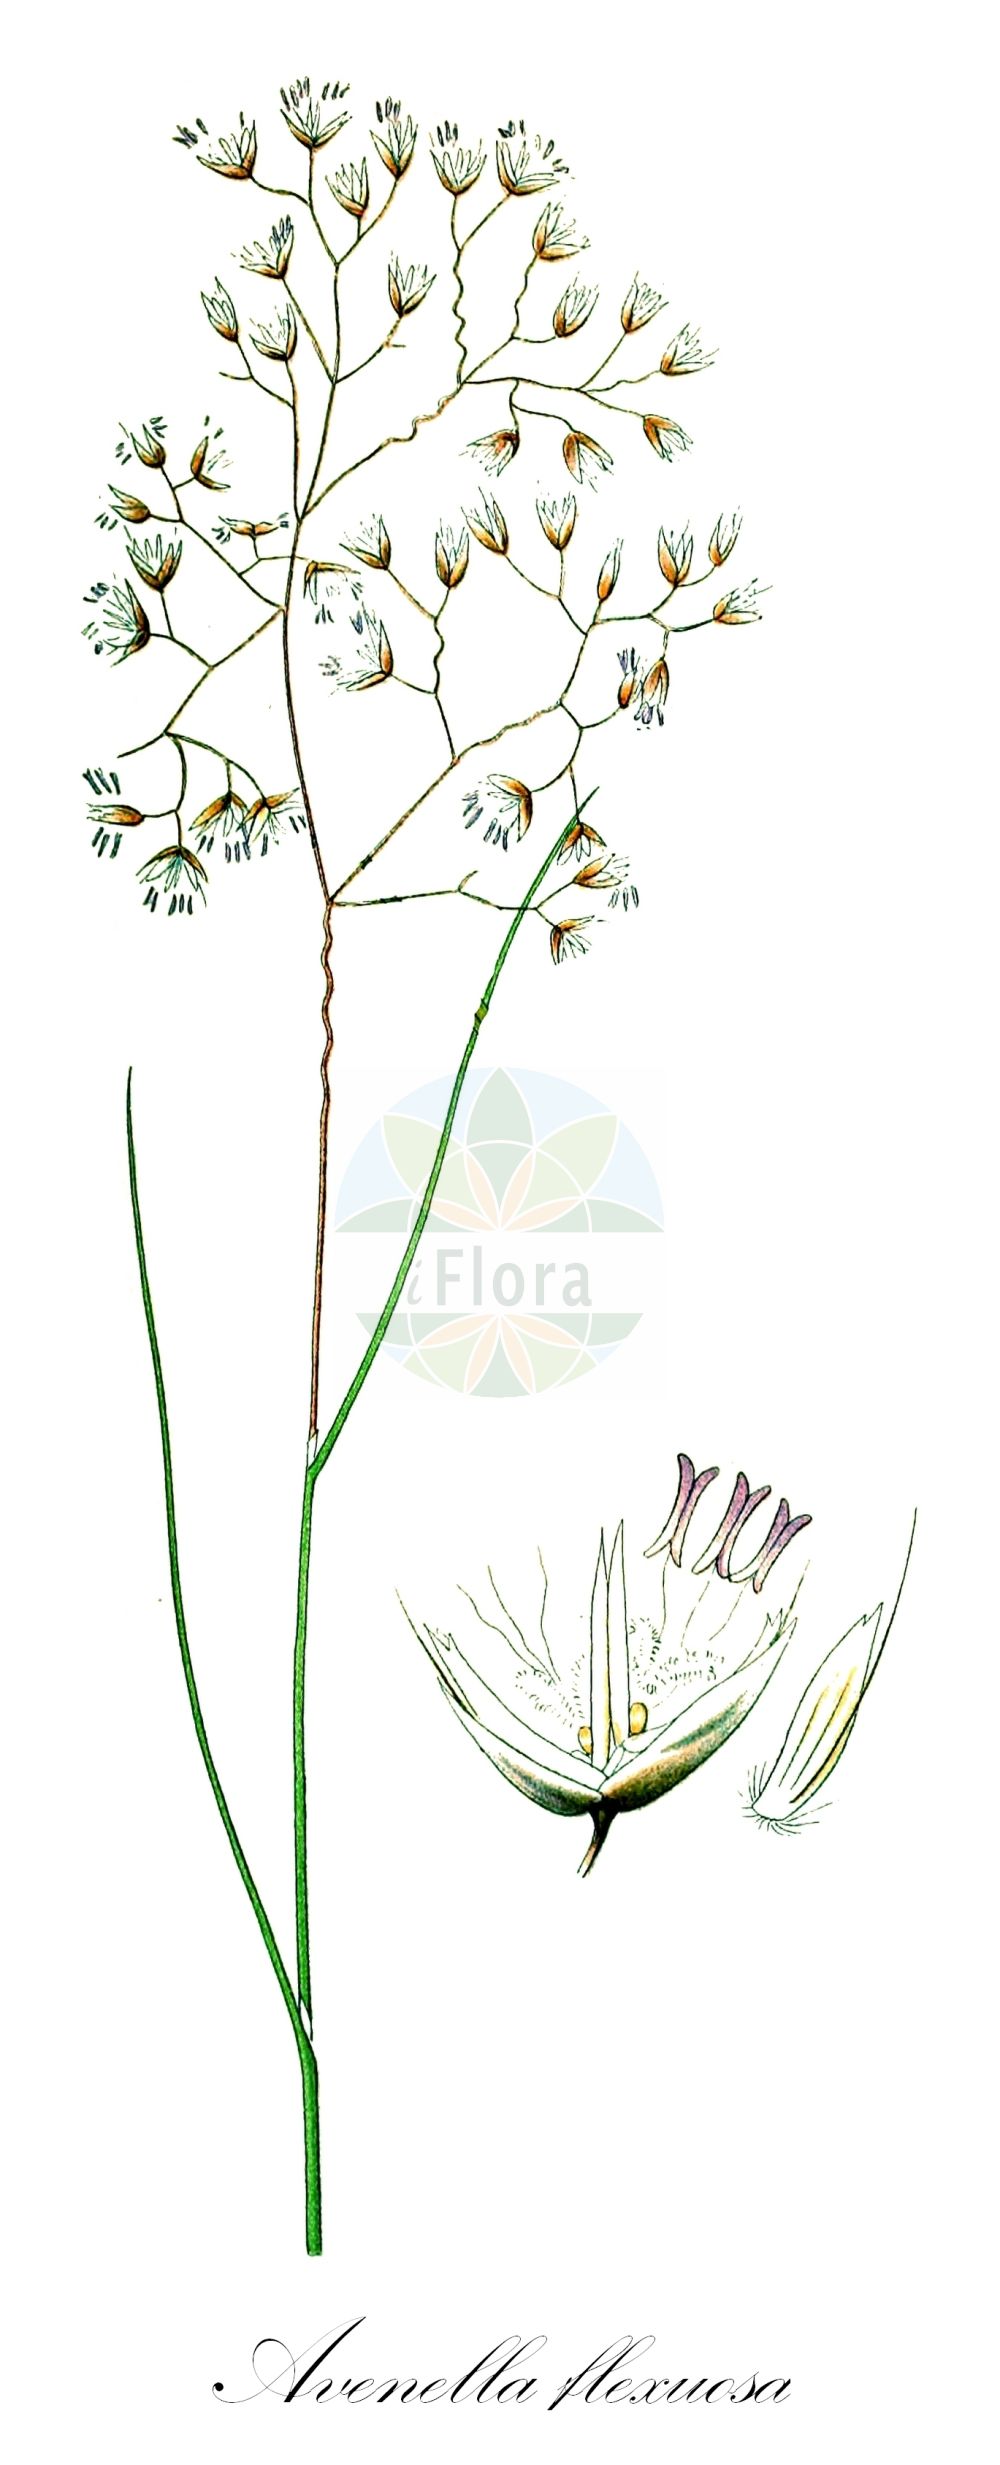 Historische Abbildung von Avenella flexuosa (Draht-Schmiele - Wavy Hair-grass). Das Bild zeigt Blatt, Bluete, Frucht und Same. ---- Historical Drawing of Avenella flexuosa (Draht-Schmiele - Wavy Hair-grass). The image is showing leaf, flower, fruit and seed.(Avenella flexuosa,Draht-Schmiele,Wavy Hair-grass,Aira flexuosa,Aira stricta,Avenella flexuosa,Deschampsia flexuosa,Deschampsia mairei,Deschampsia stricta,Lerchenfeldia flexuosa,Draht-Schmiele,Wald-Schmiele,Wavy Hair-grass,Crinkled Hairgrass,Avenella,Poaceae,Süßgräser,Grass family,Blatt,Bluete,Frucht,Same,leaf,flower,fruit,seed,Lindman (1901-1905))